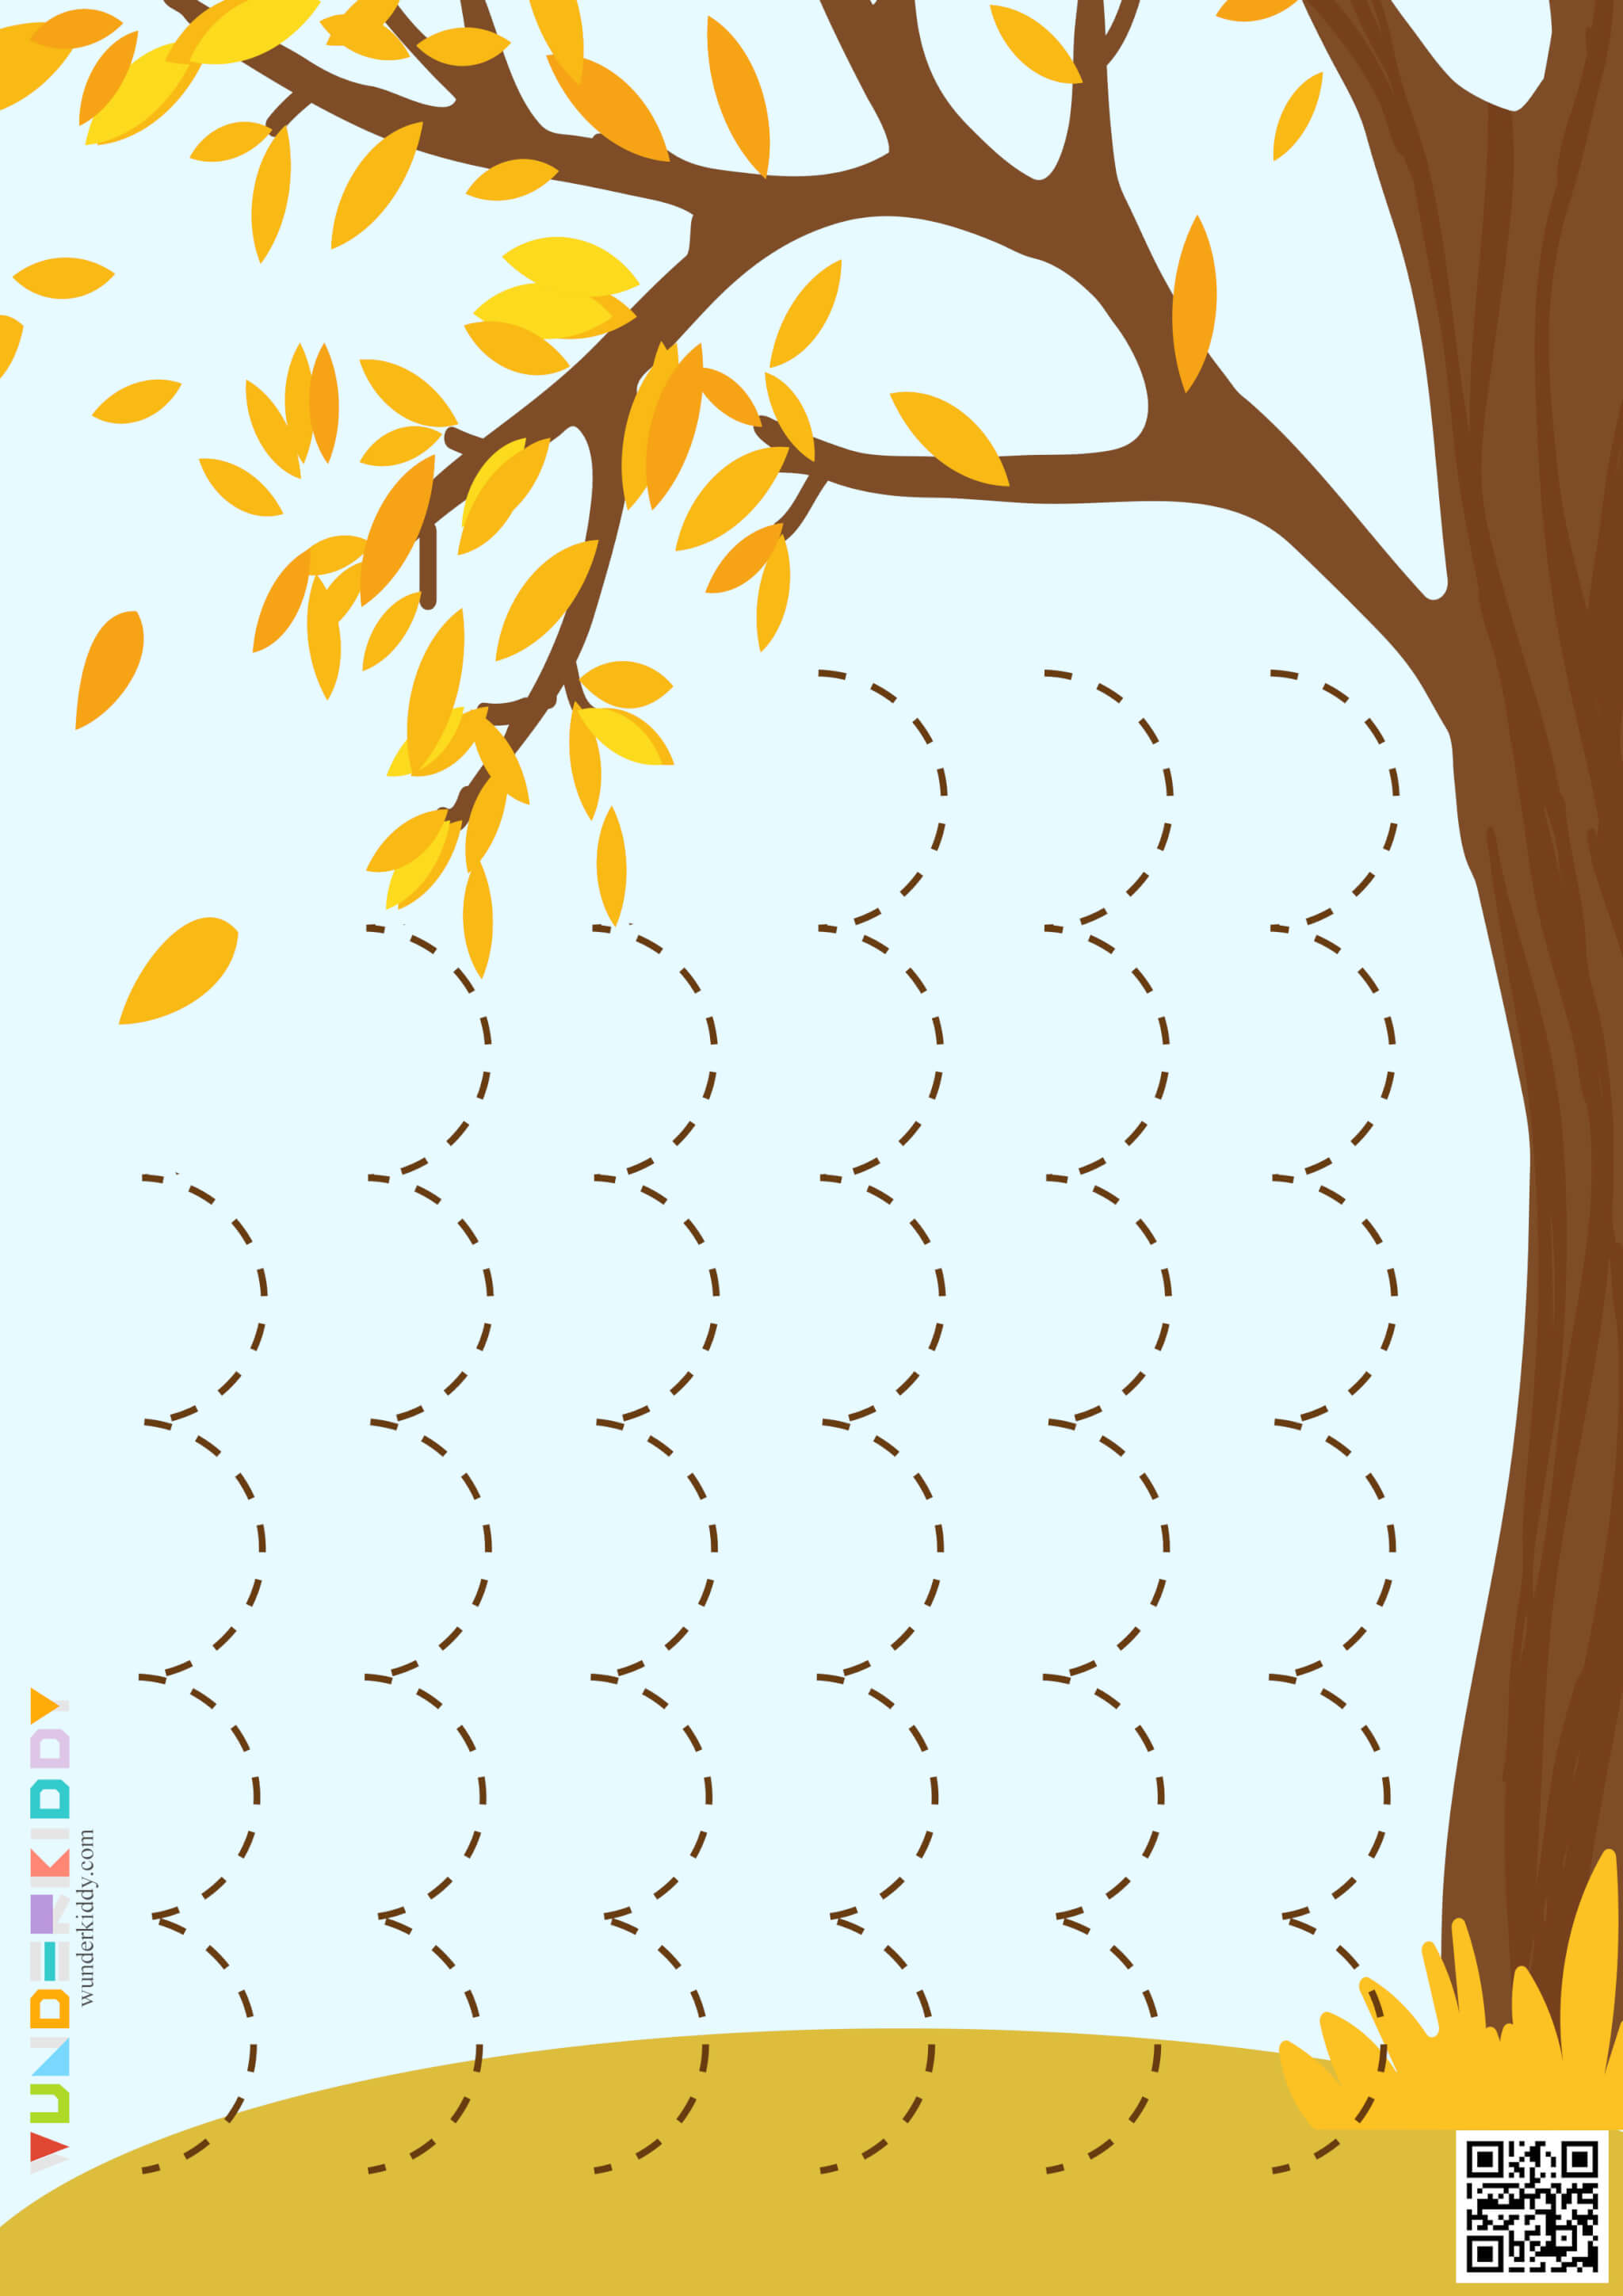 Worksheets «Leaf fall» - Image 4